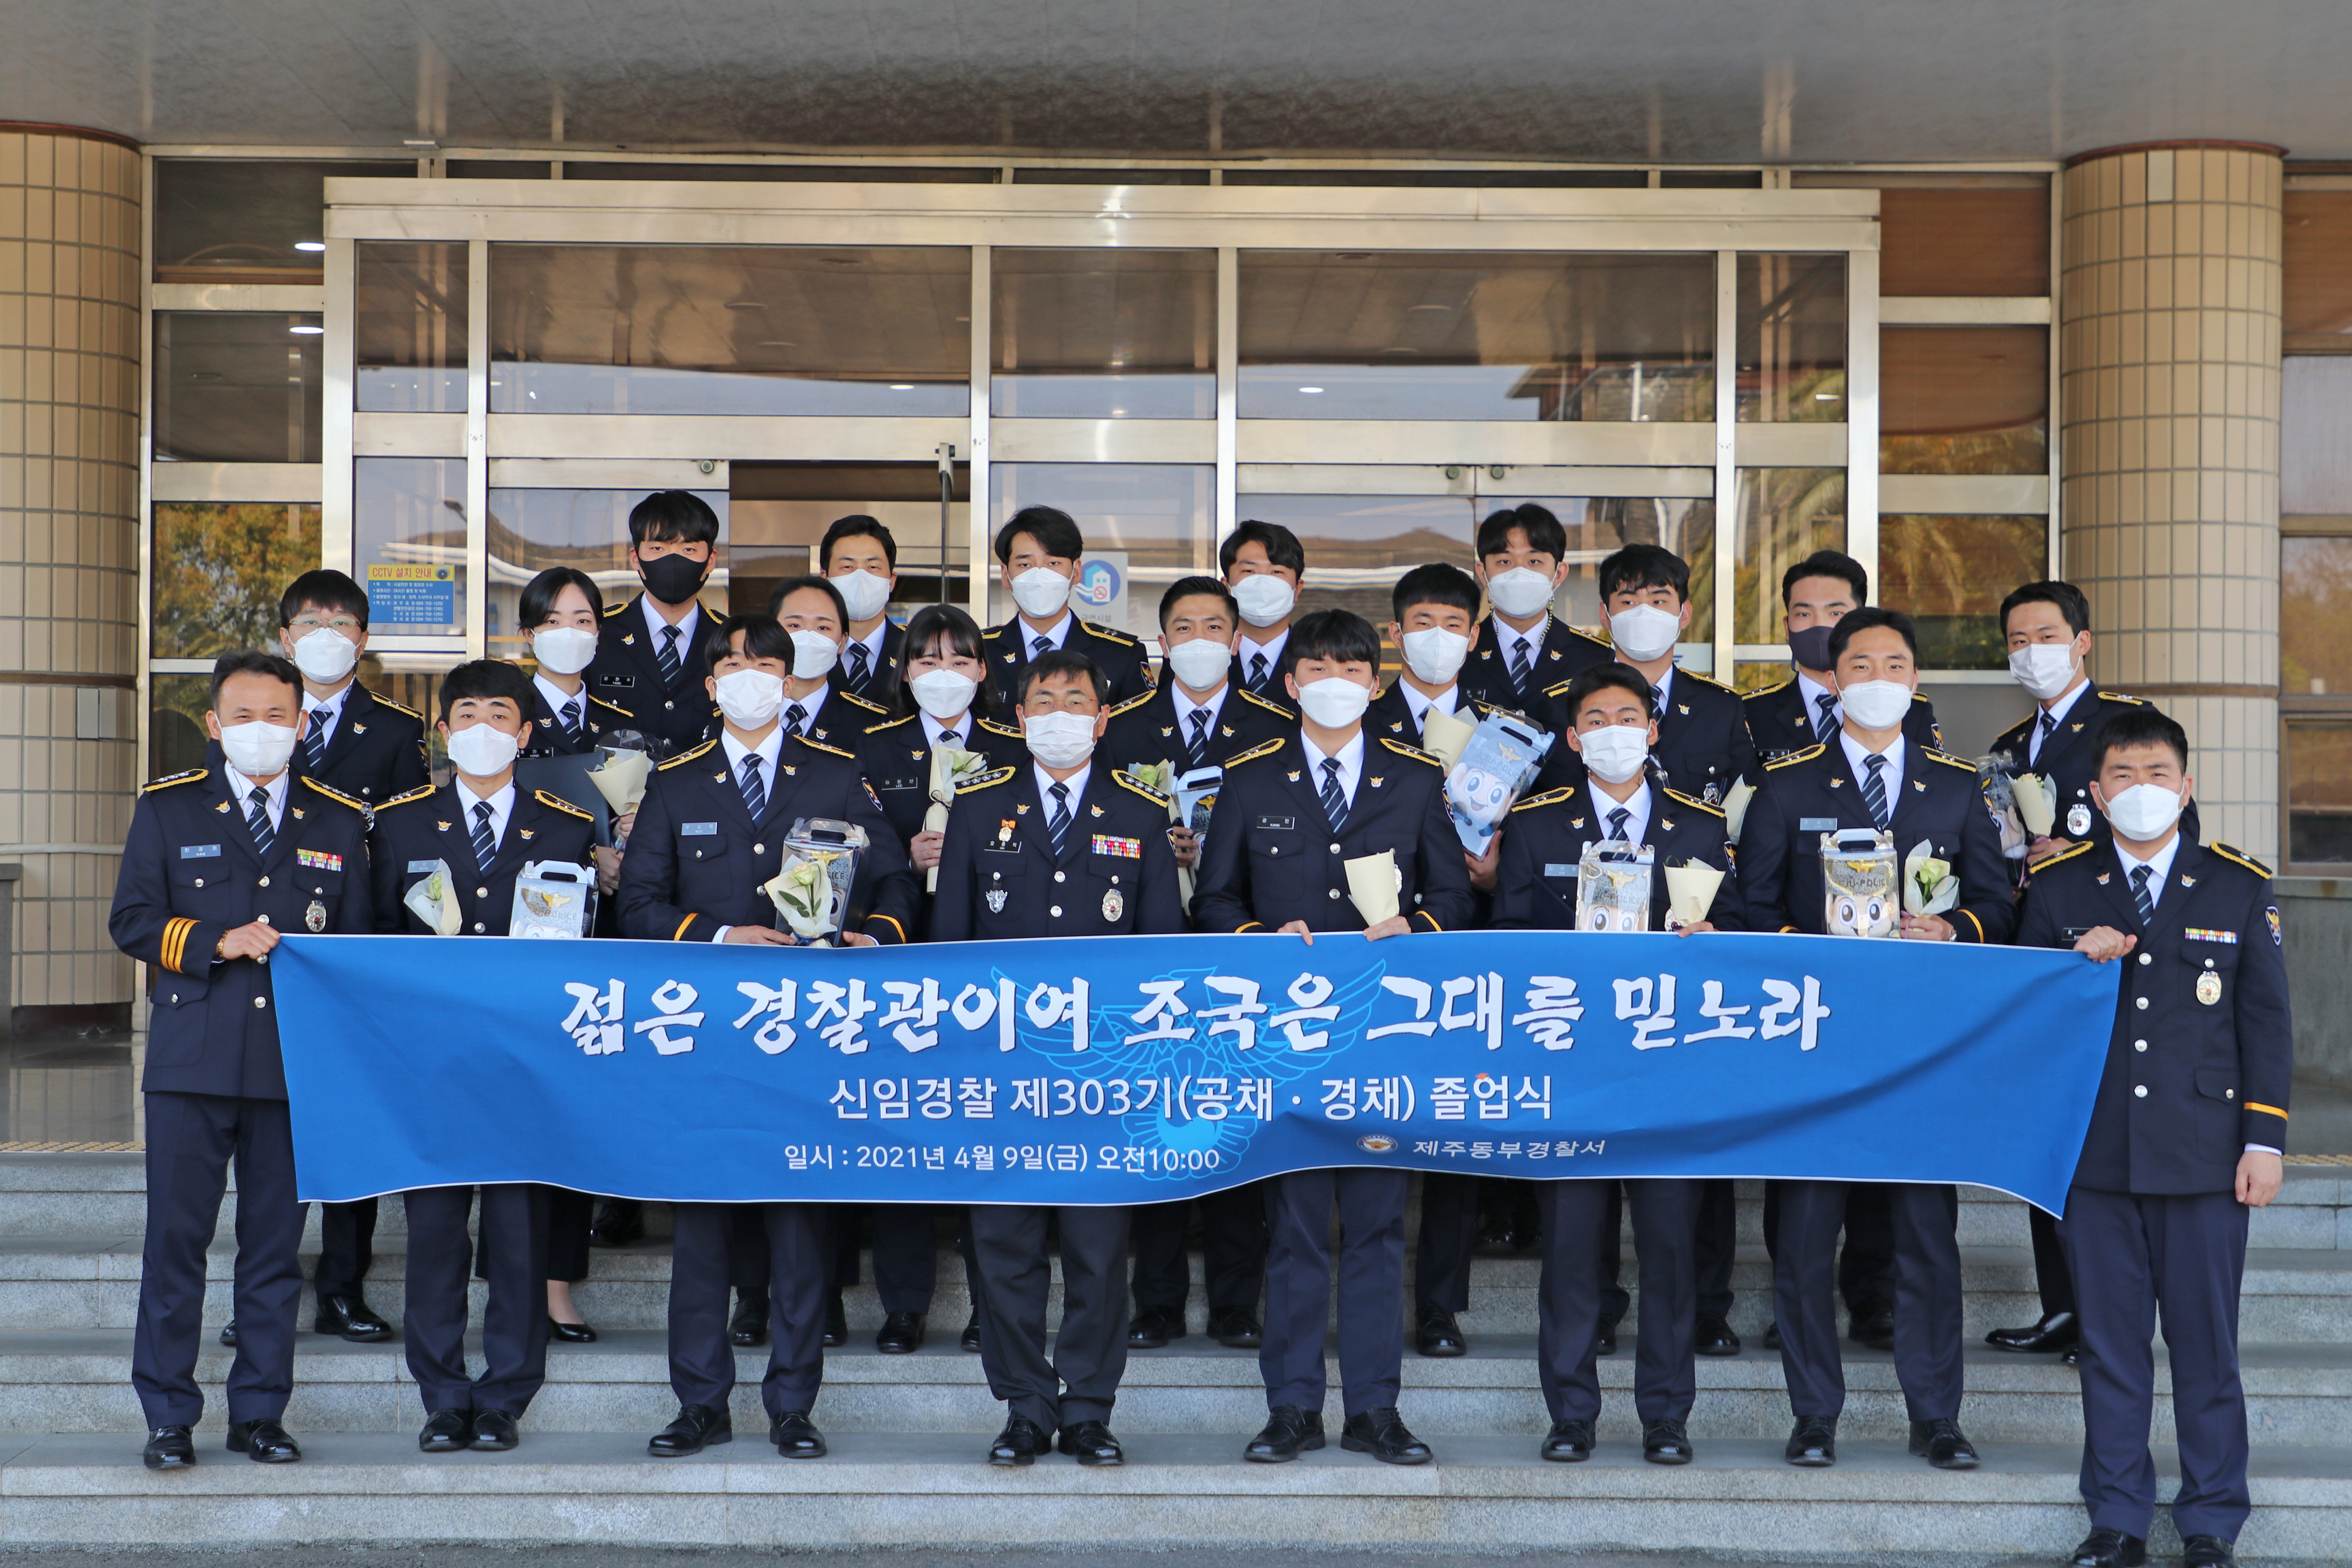 동부서, 신임 제303기(공채·경채) 졸업식